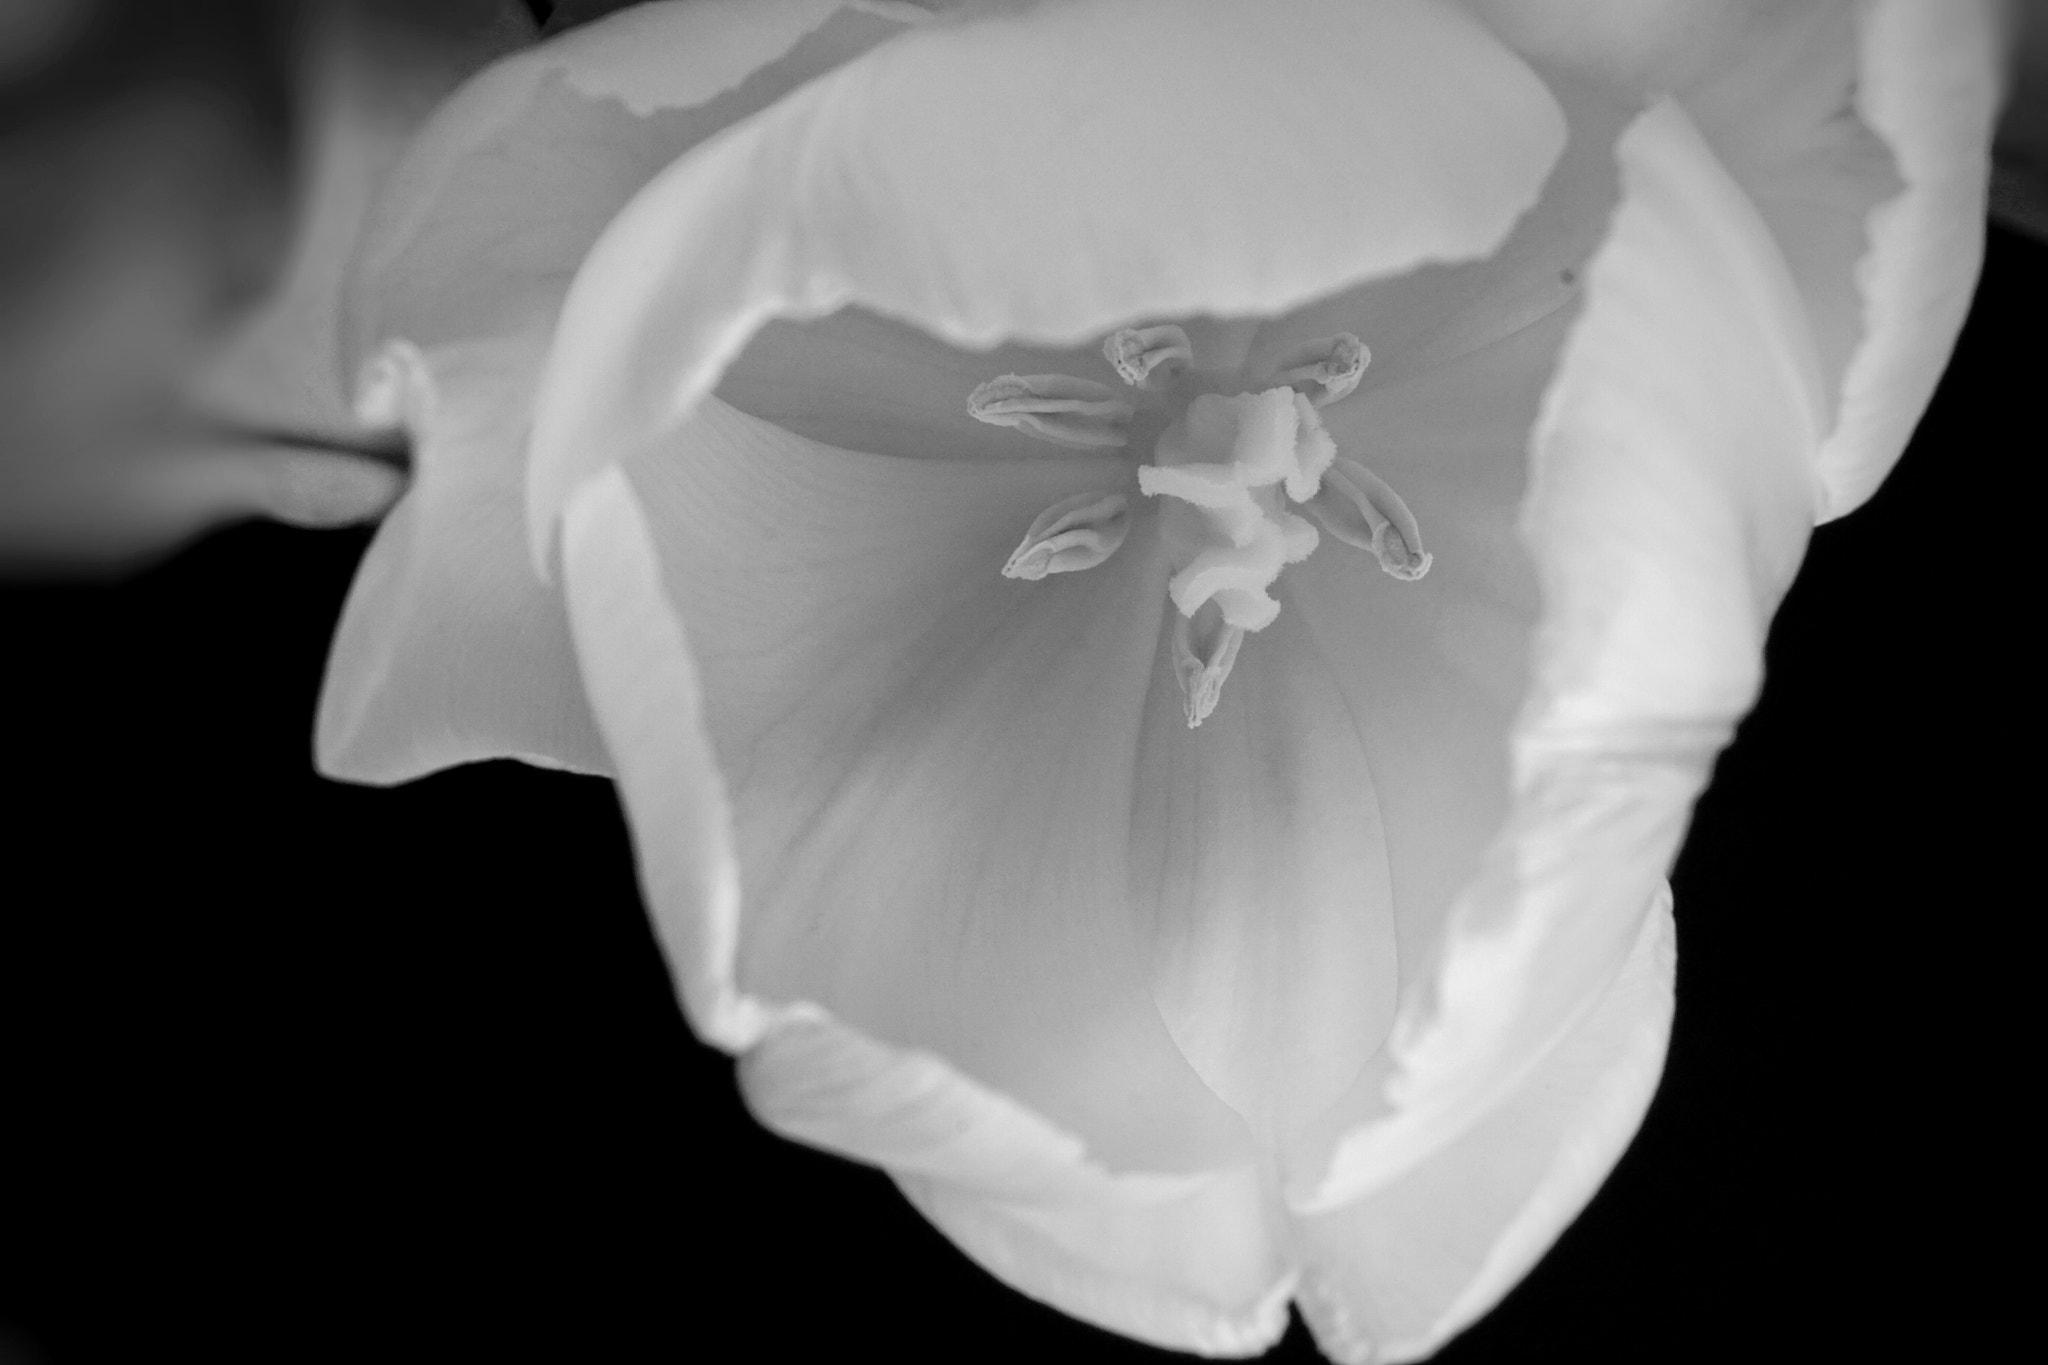 Sony E 30mm F3.5 sample photo. Tulip macro bnw photography